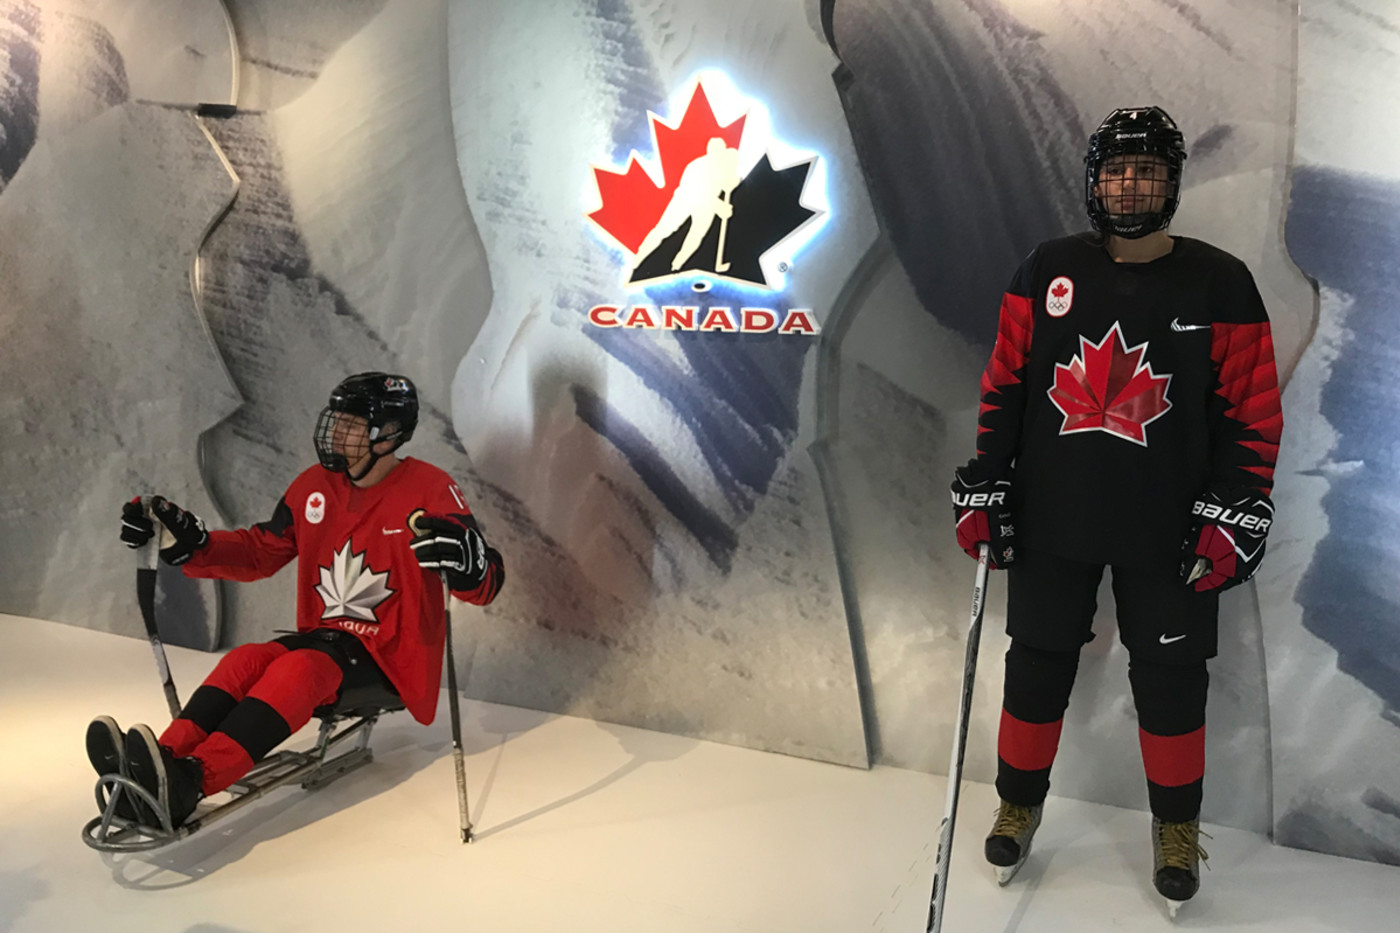 canada hockey jersey 2018